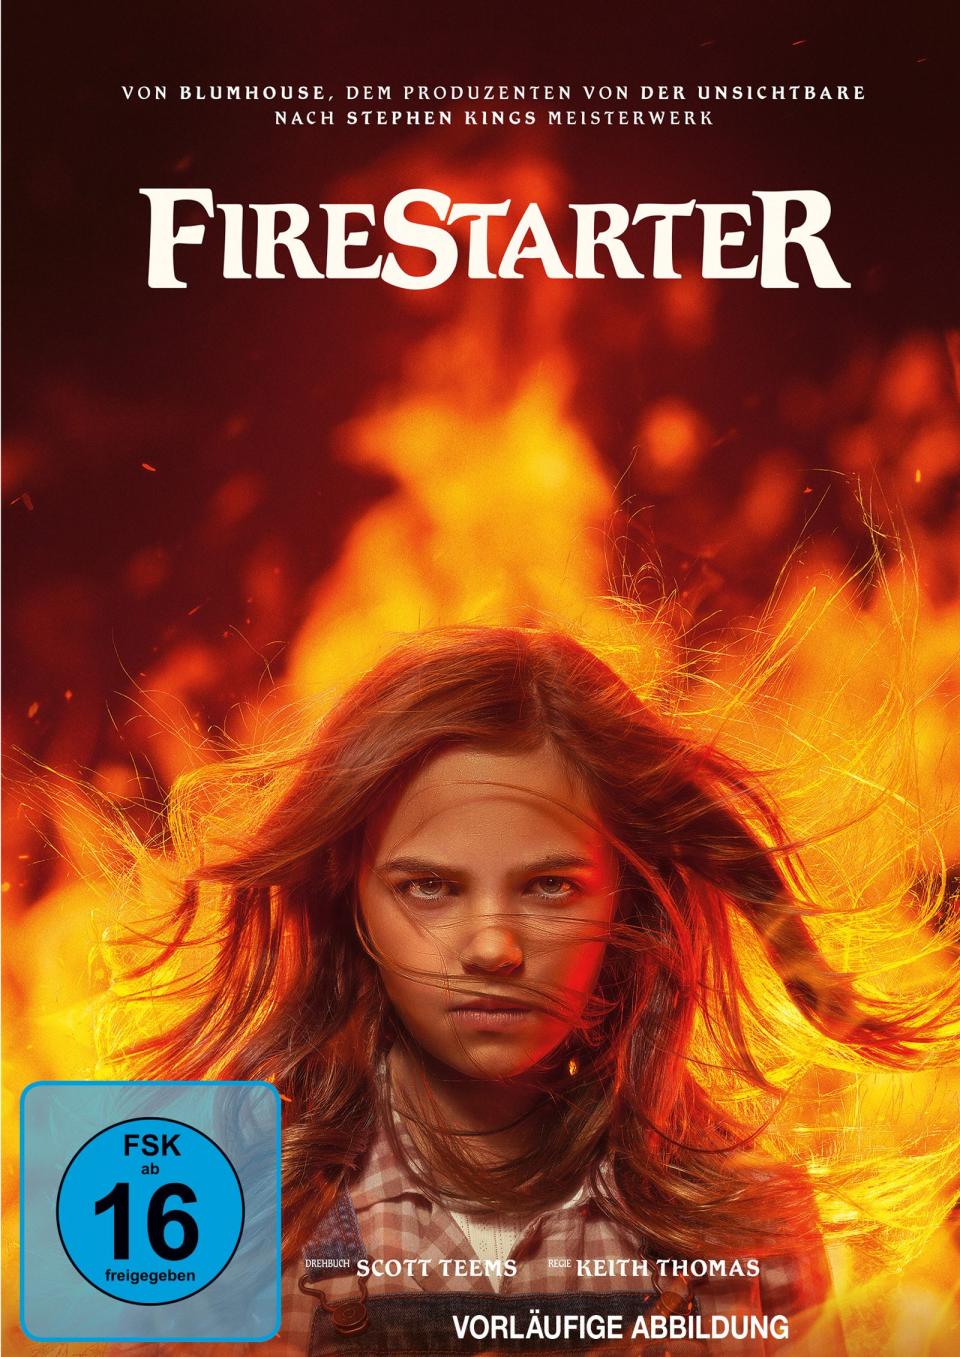 "Wer mich anlügt, der wird brennen": "Firestarter" erzählt von einem Mädchen (Ryan Kiera Armstrong), das über pyrokinetische Kräfte verfügt. Die Geschichte basiert auf einem gleichnamigen Roman von Stephen King. (Bild: Universal Pictures)